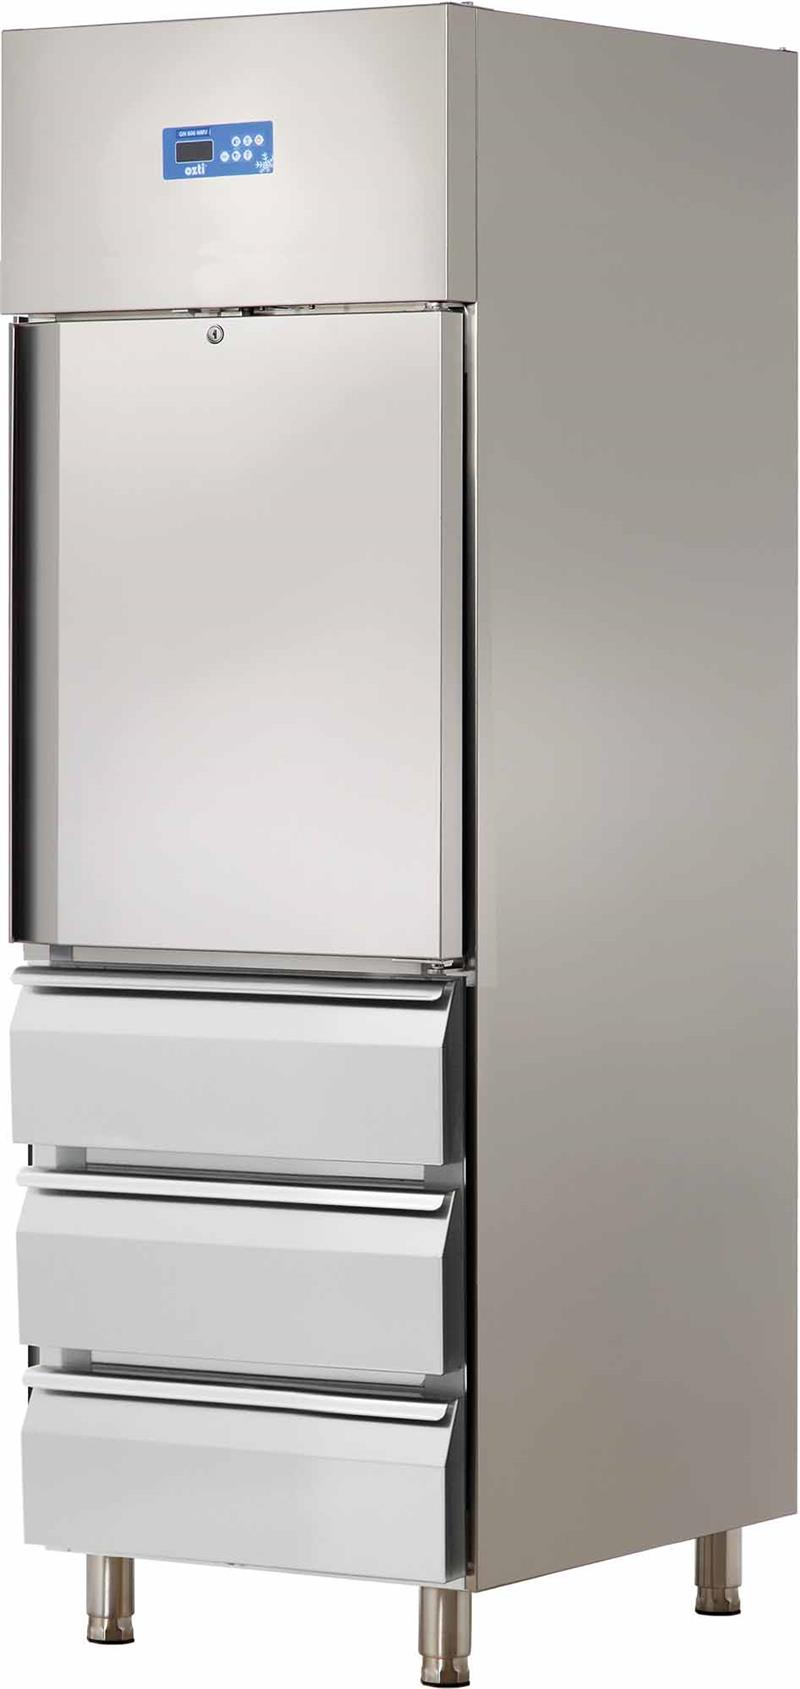 Холодильник с одной дверью и тремя ящиками из нержавеющей стали (вертикальный)